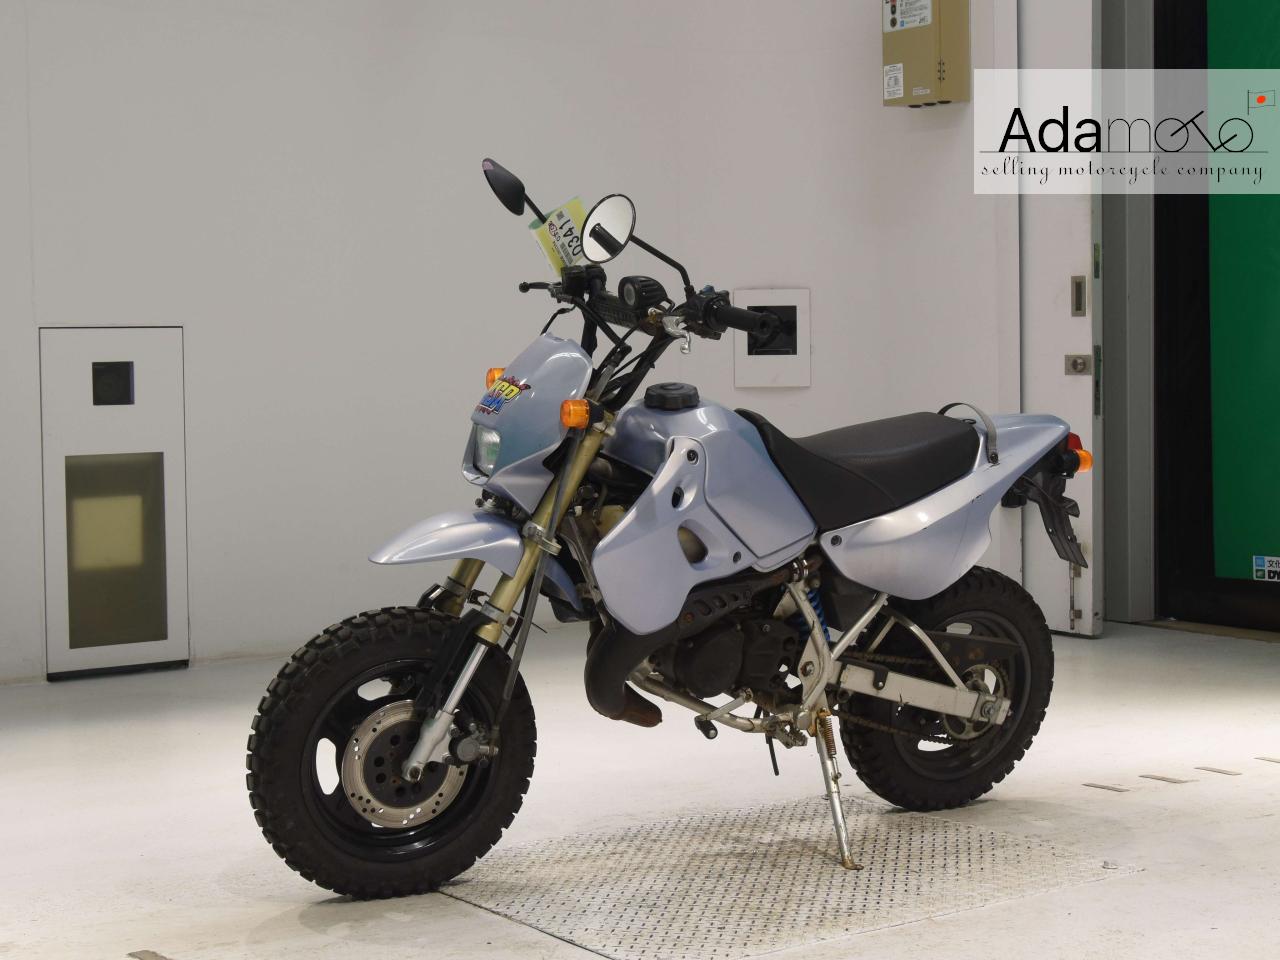 Kawasaki KSR 2 - Adamoto - Motorcycles from Japan